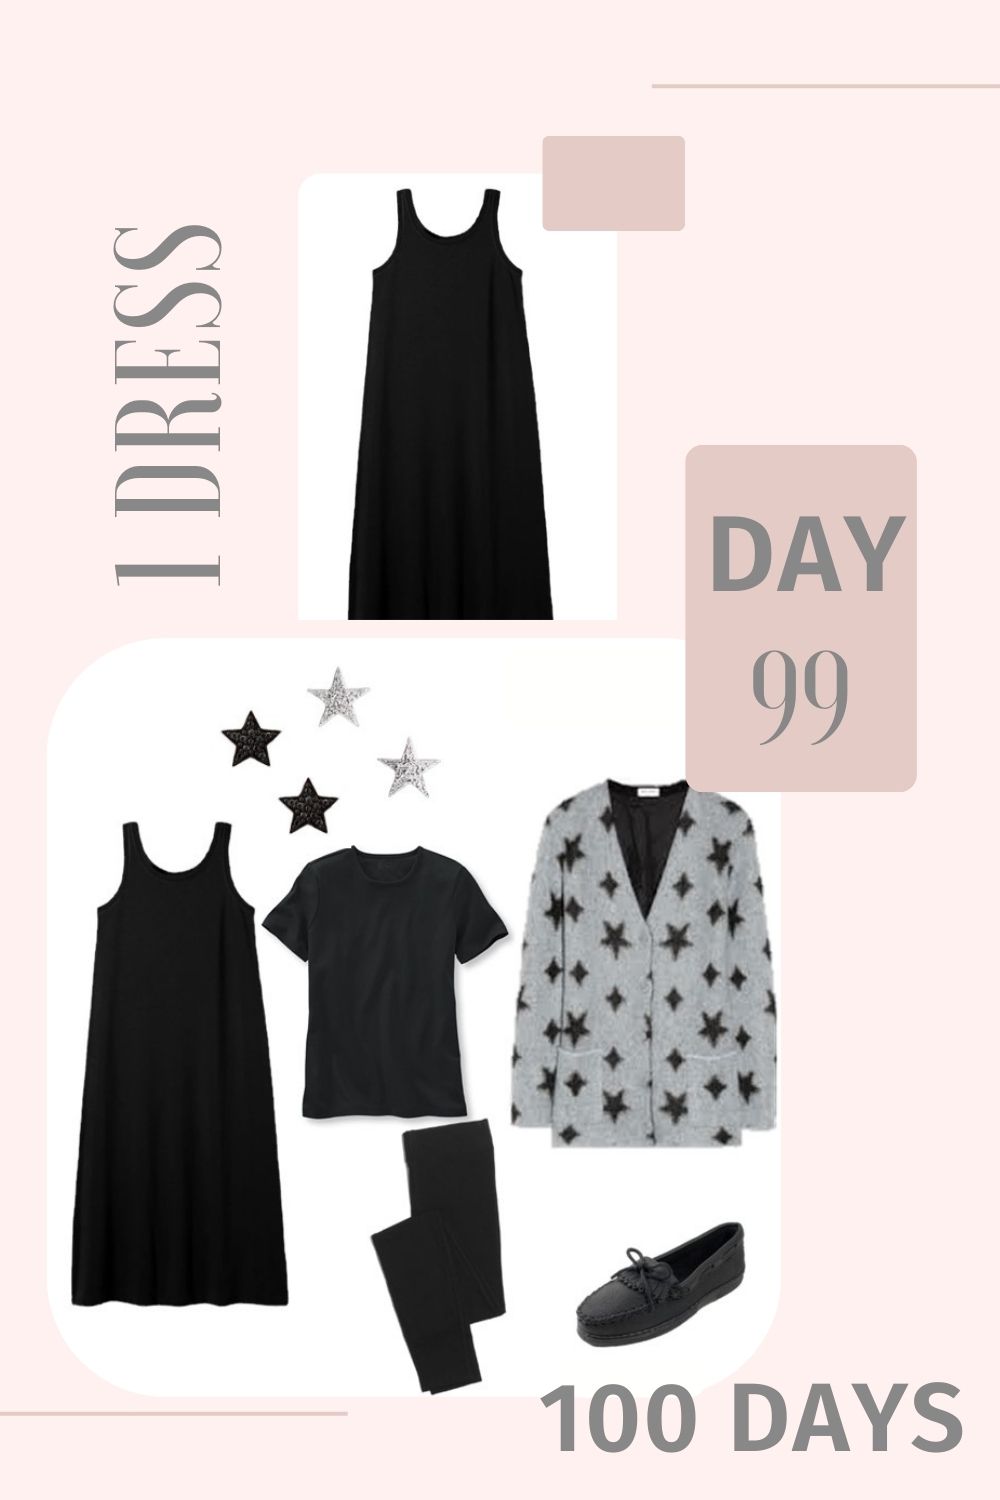 1 Dress 100 Days - Day 99